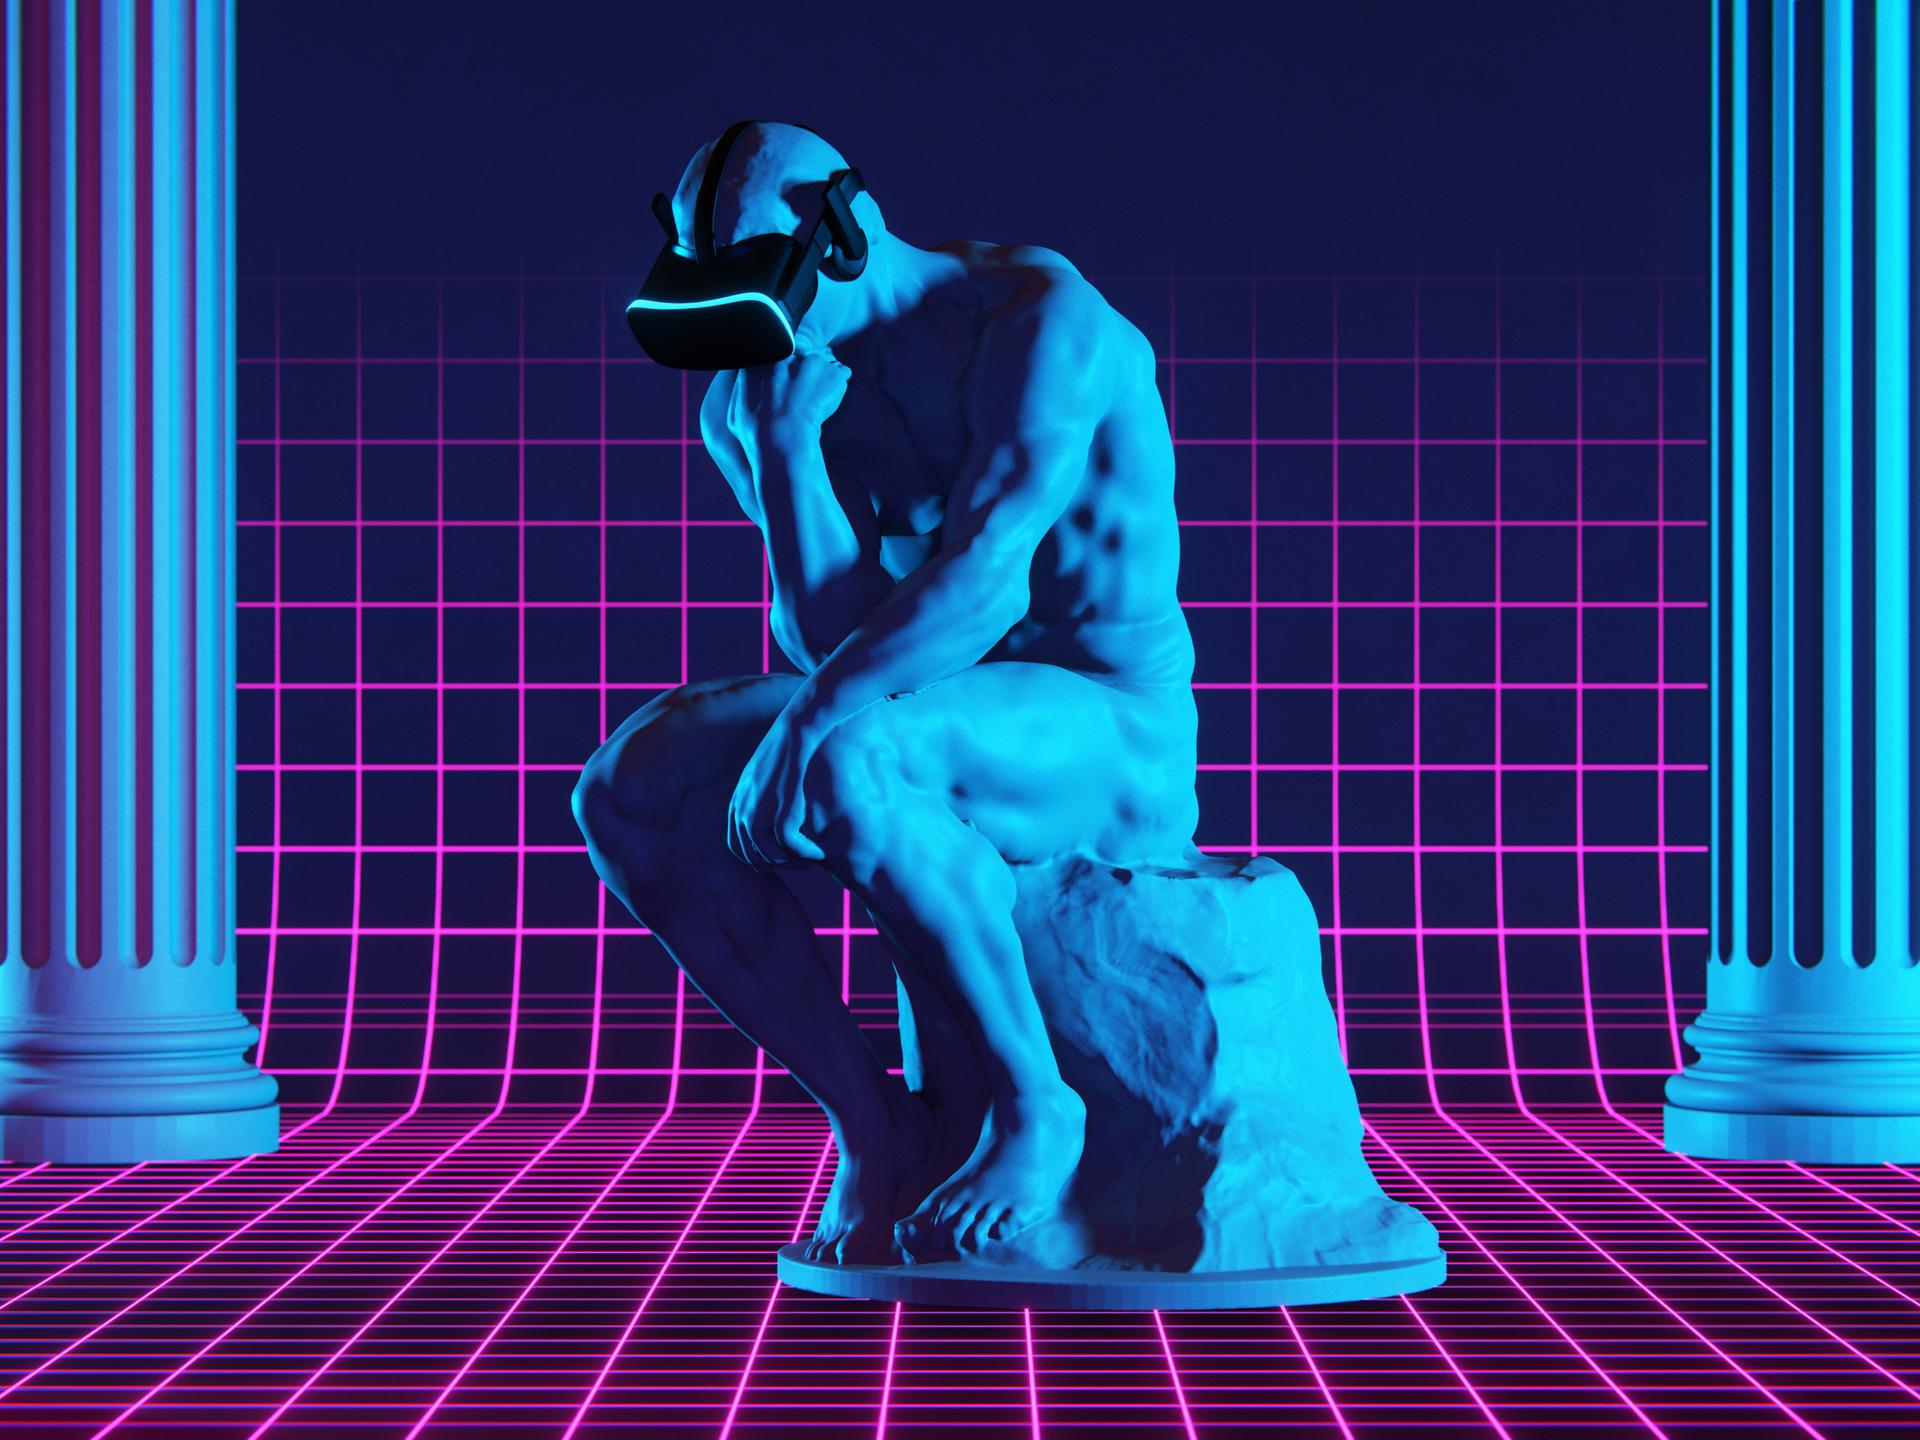 Illustration bzw. 3D-Rendering: Die bekannte Denker-Statue von Rodin trägt ein virtuelles Headset in einer digital anmutenden Umgebung. 